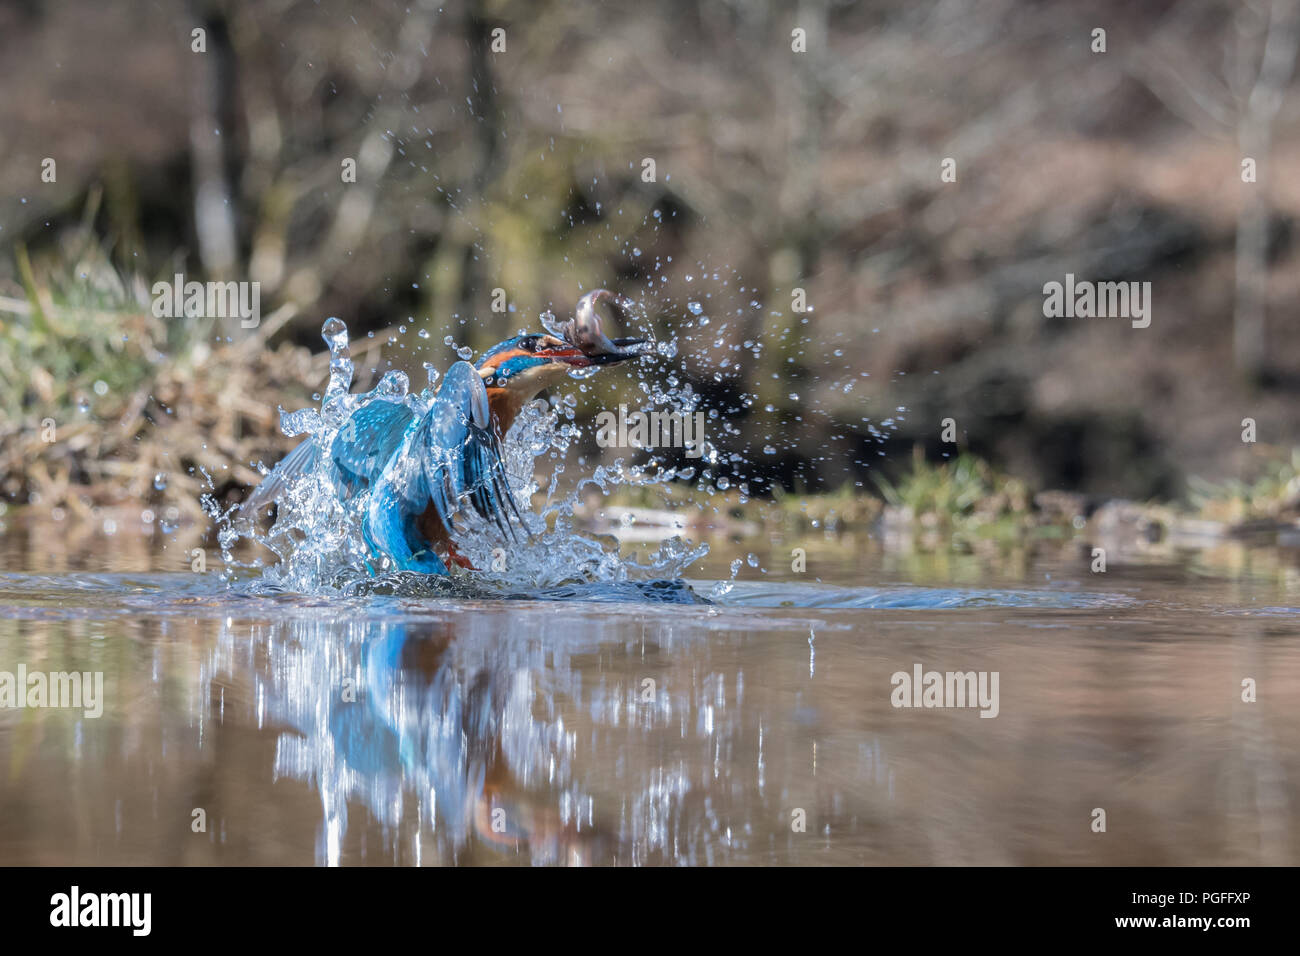 Un niveau bas d'une photo d'action Kingfisher avec une boule. L'image est prise au niveau de l'eau et montre l'oiseau émergeant de l'eau avec beaucoup Banque D'Images